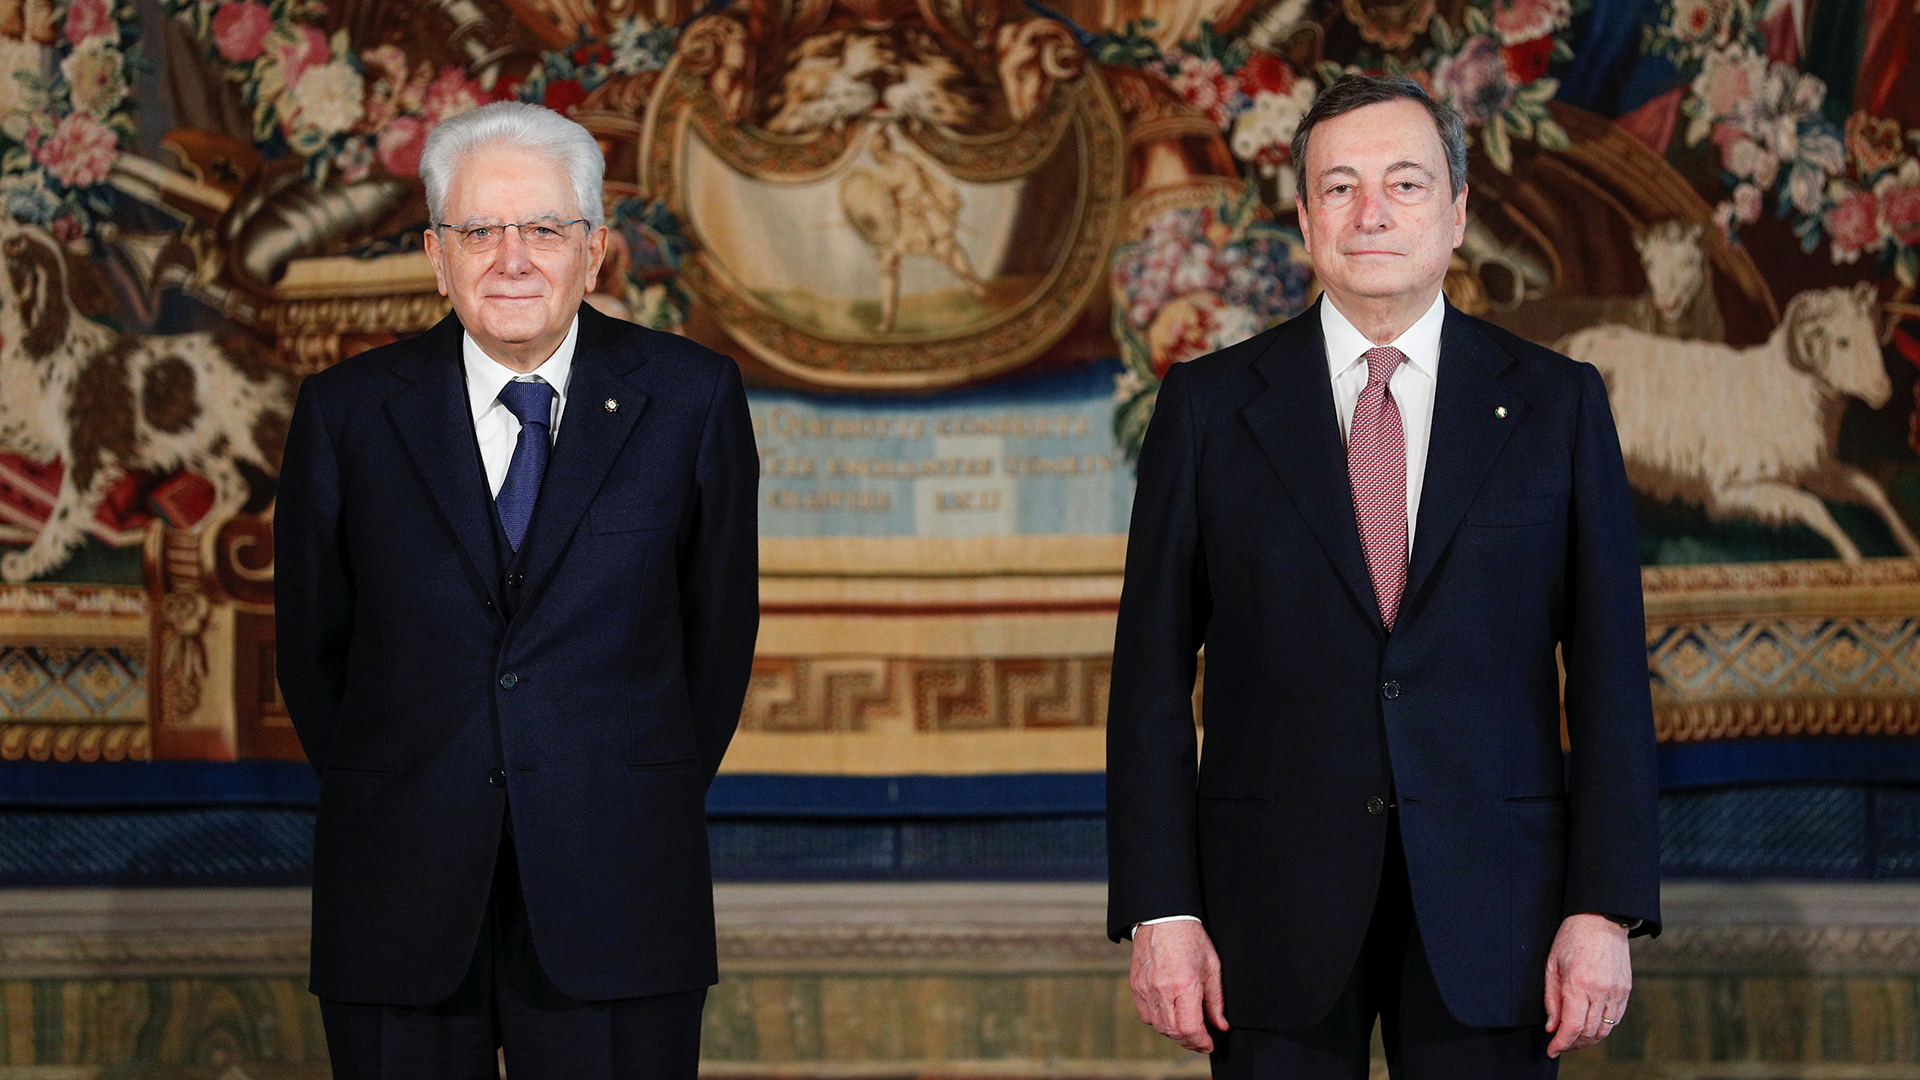 Sergio Mattarella und Mario Draghi nach der Vereidigung | REUTERS